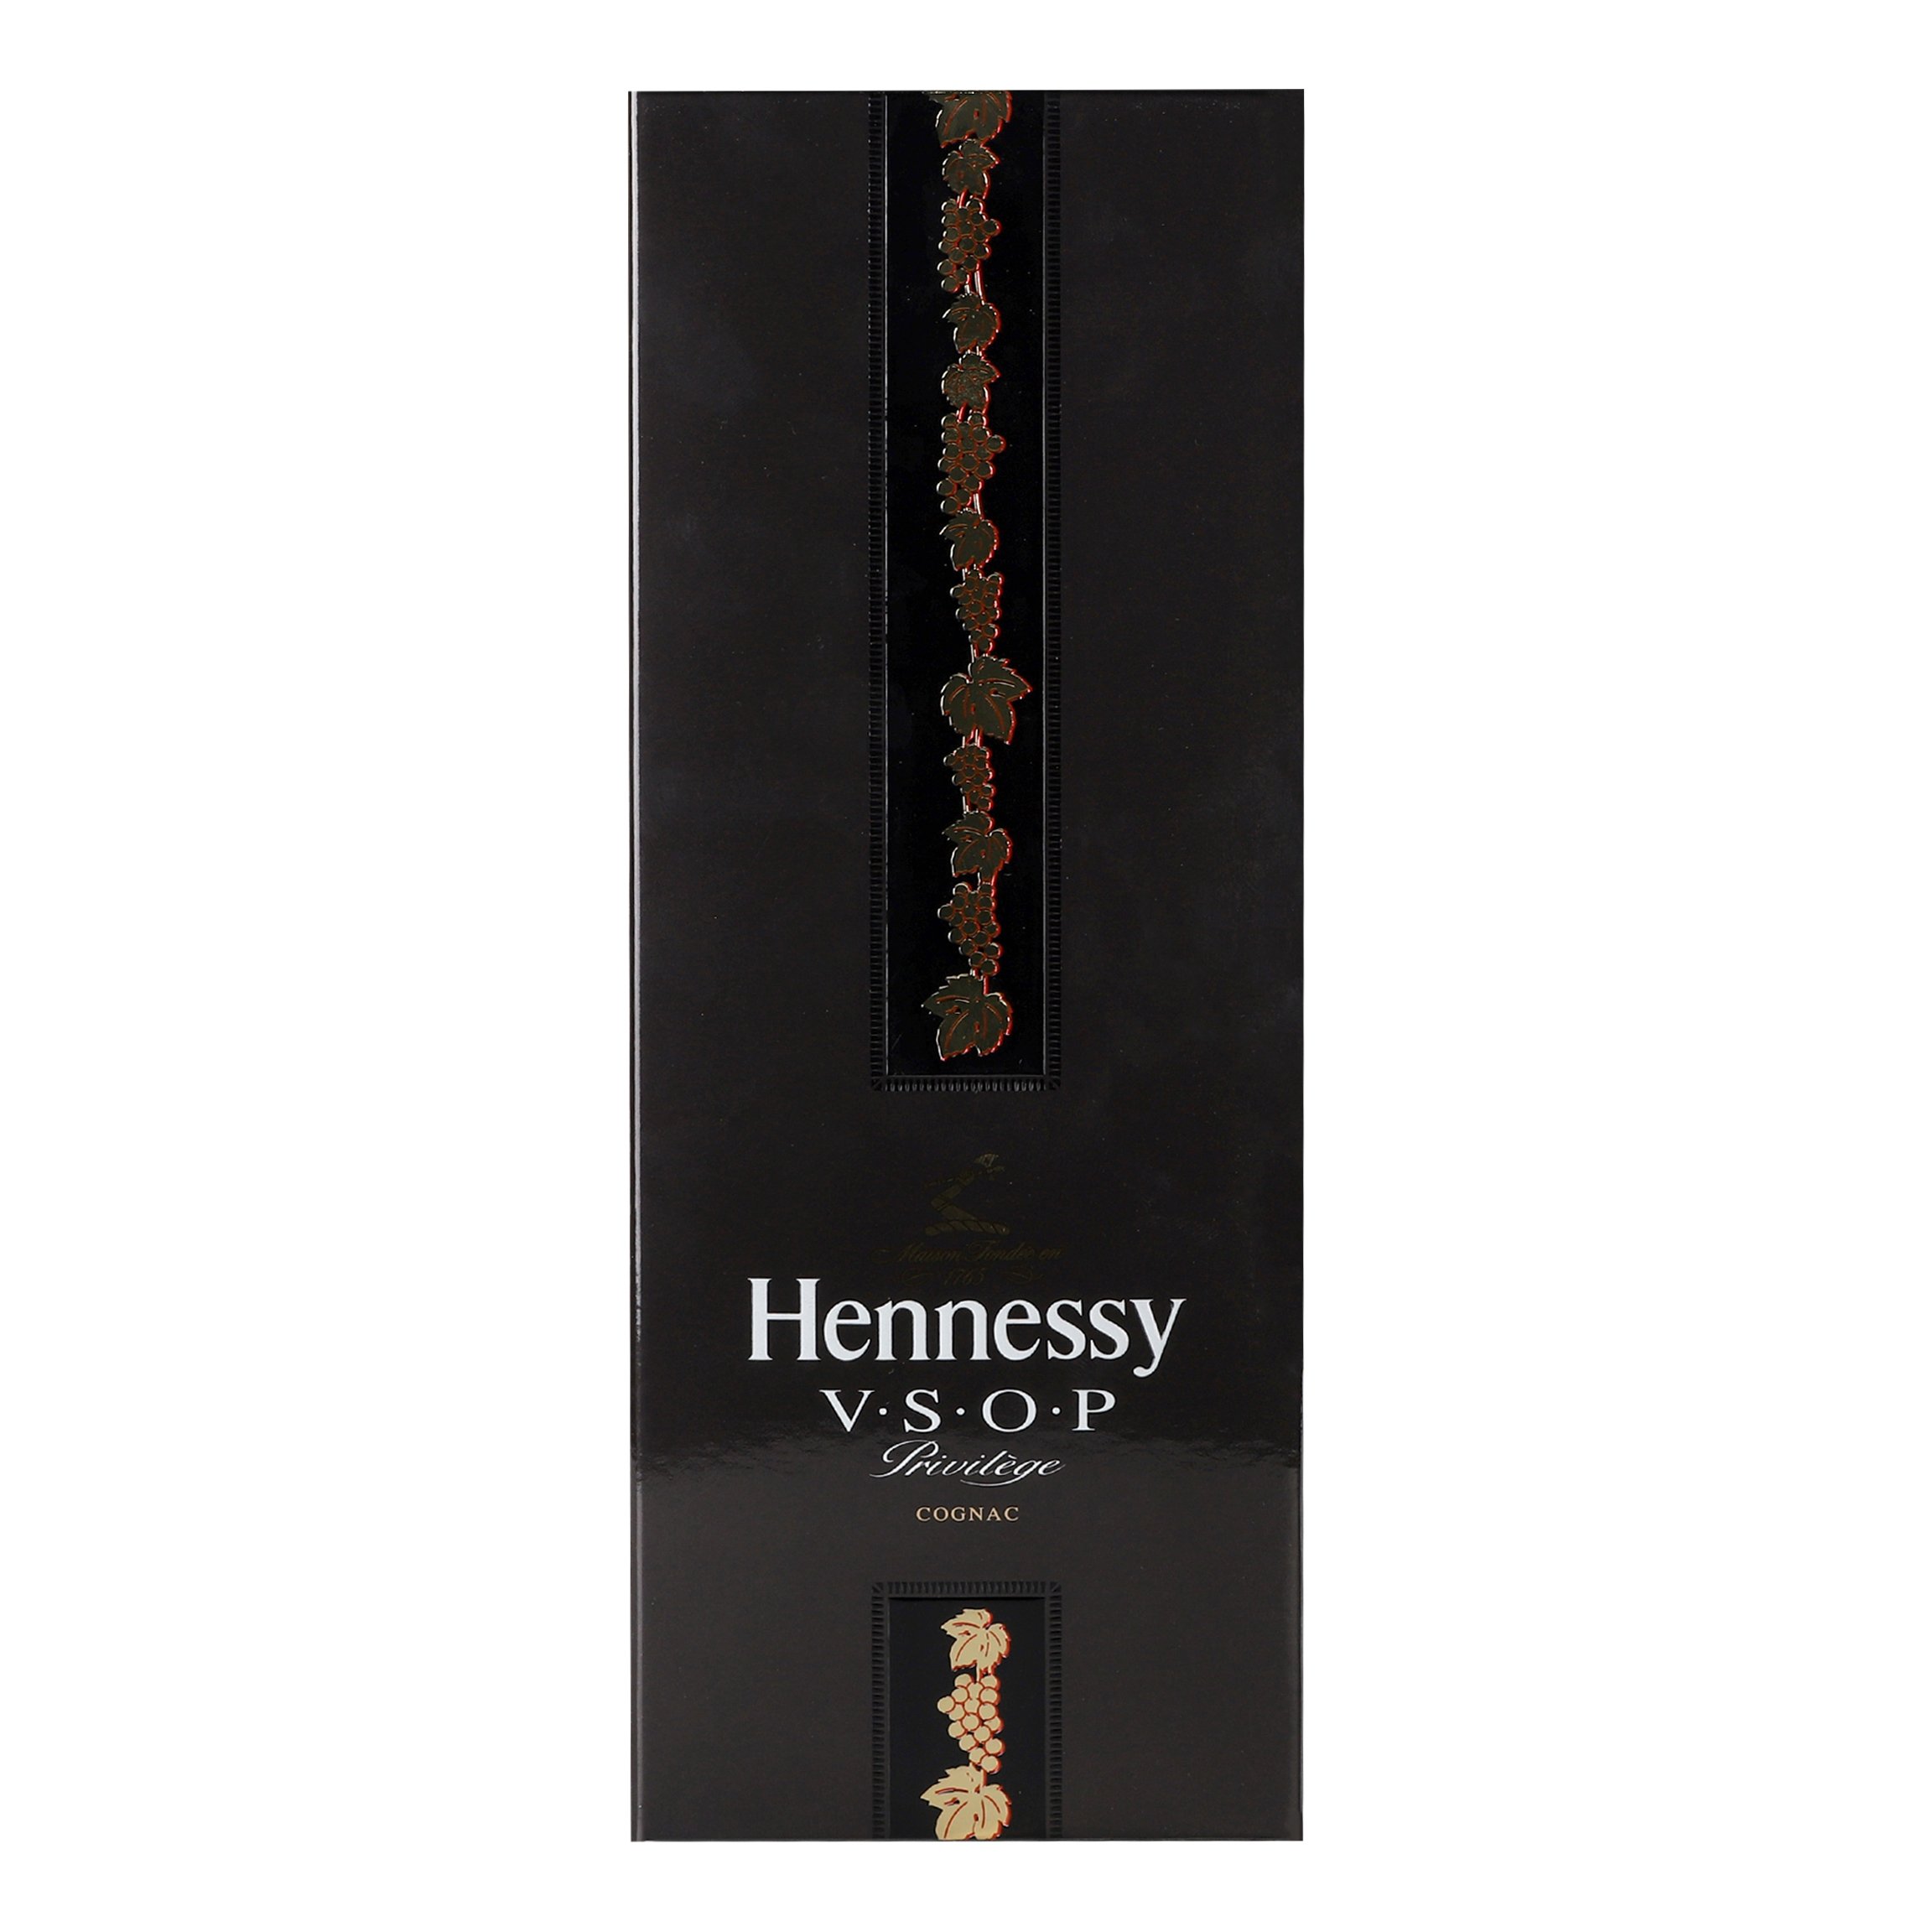 Коньяк Hennessy VSOP 6 лет выдержки, в подарочной упаковке, 40%, 0,7 л (10021) - фото 3